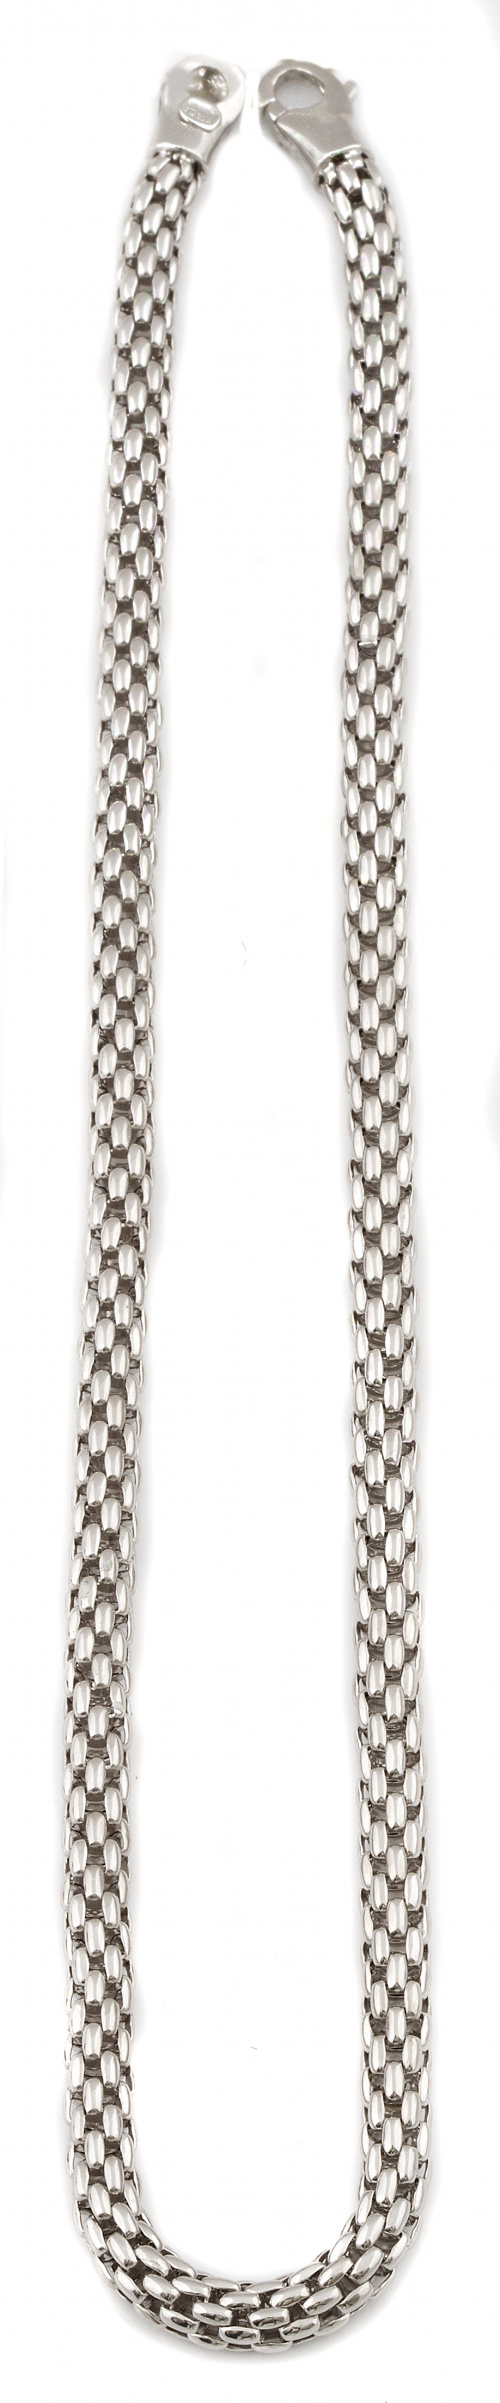 Collar de malla tubular flexible en oro blanco de 18K.